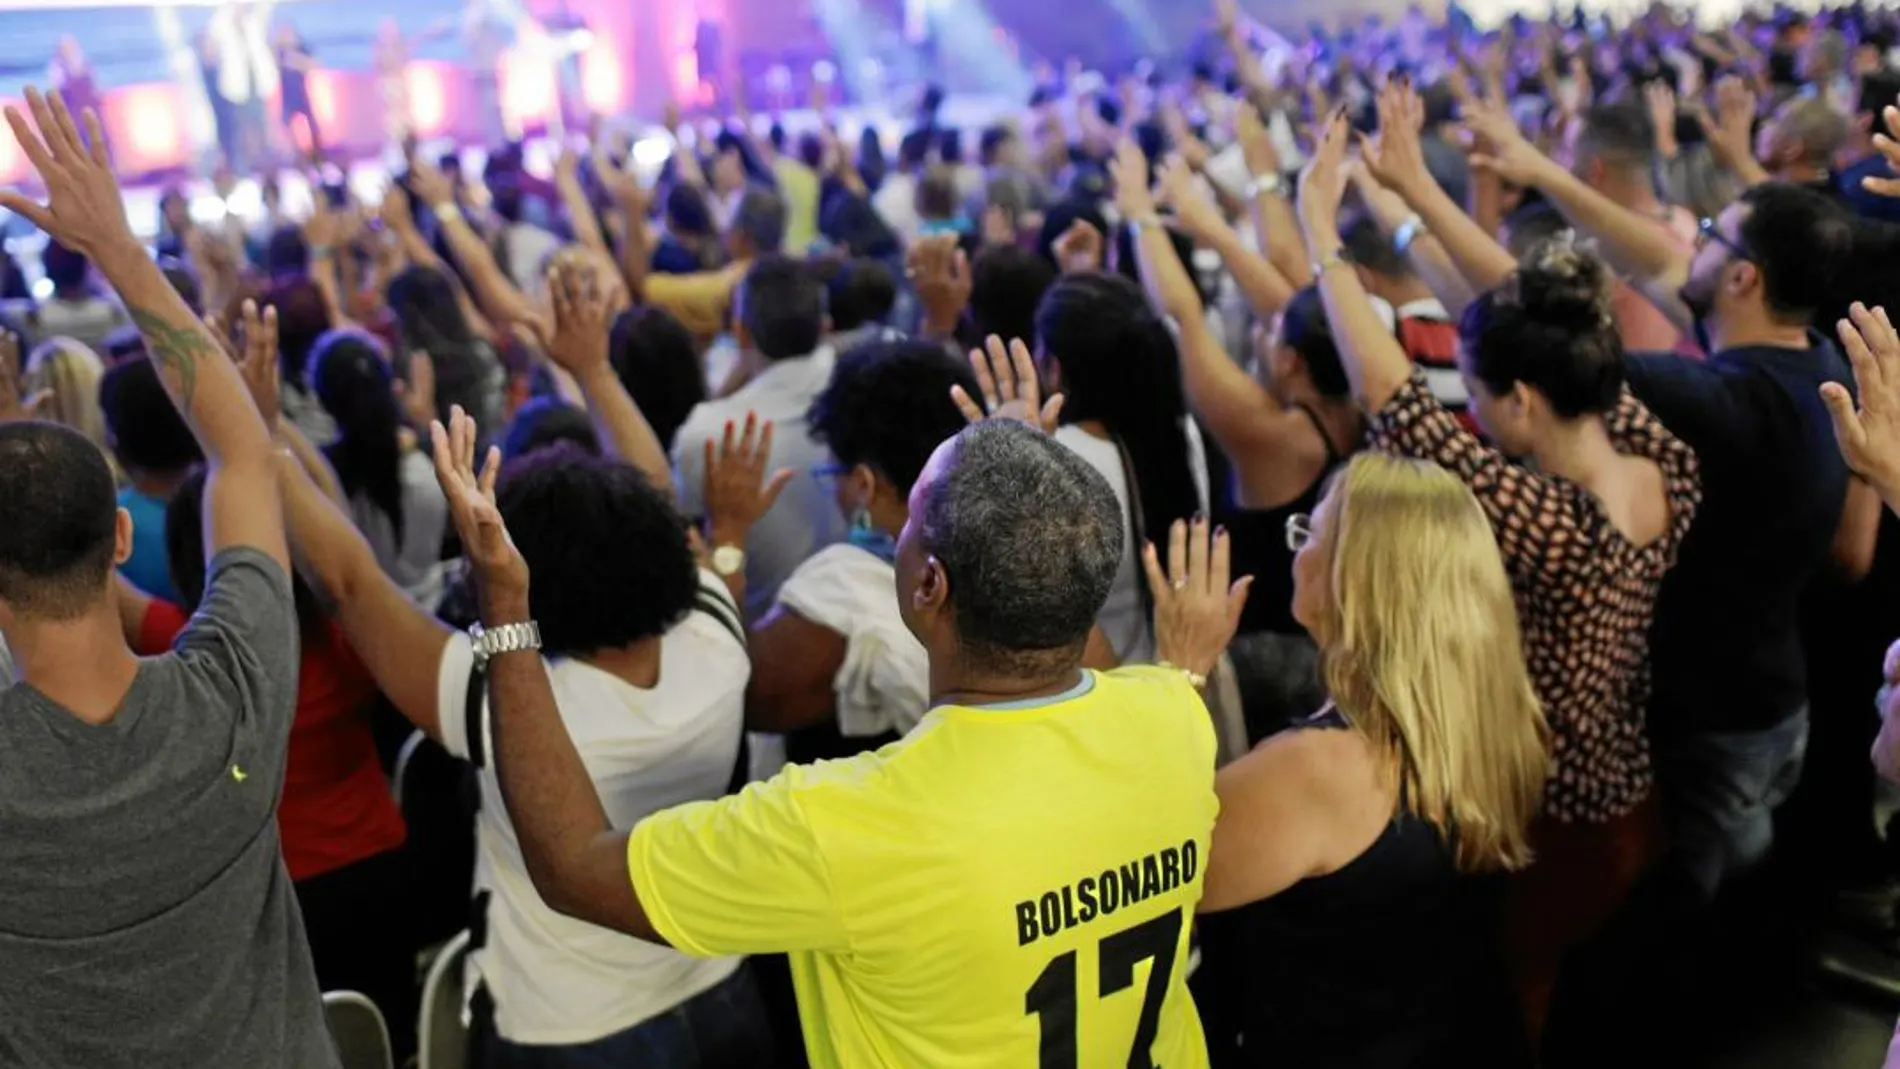 Fieles evangelicos, uno de ellos con una camiseta a favor del candidato ultra, asisten a un servicio religioso de Silas Malafaia en Río de Janeiro